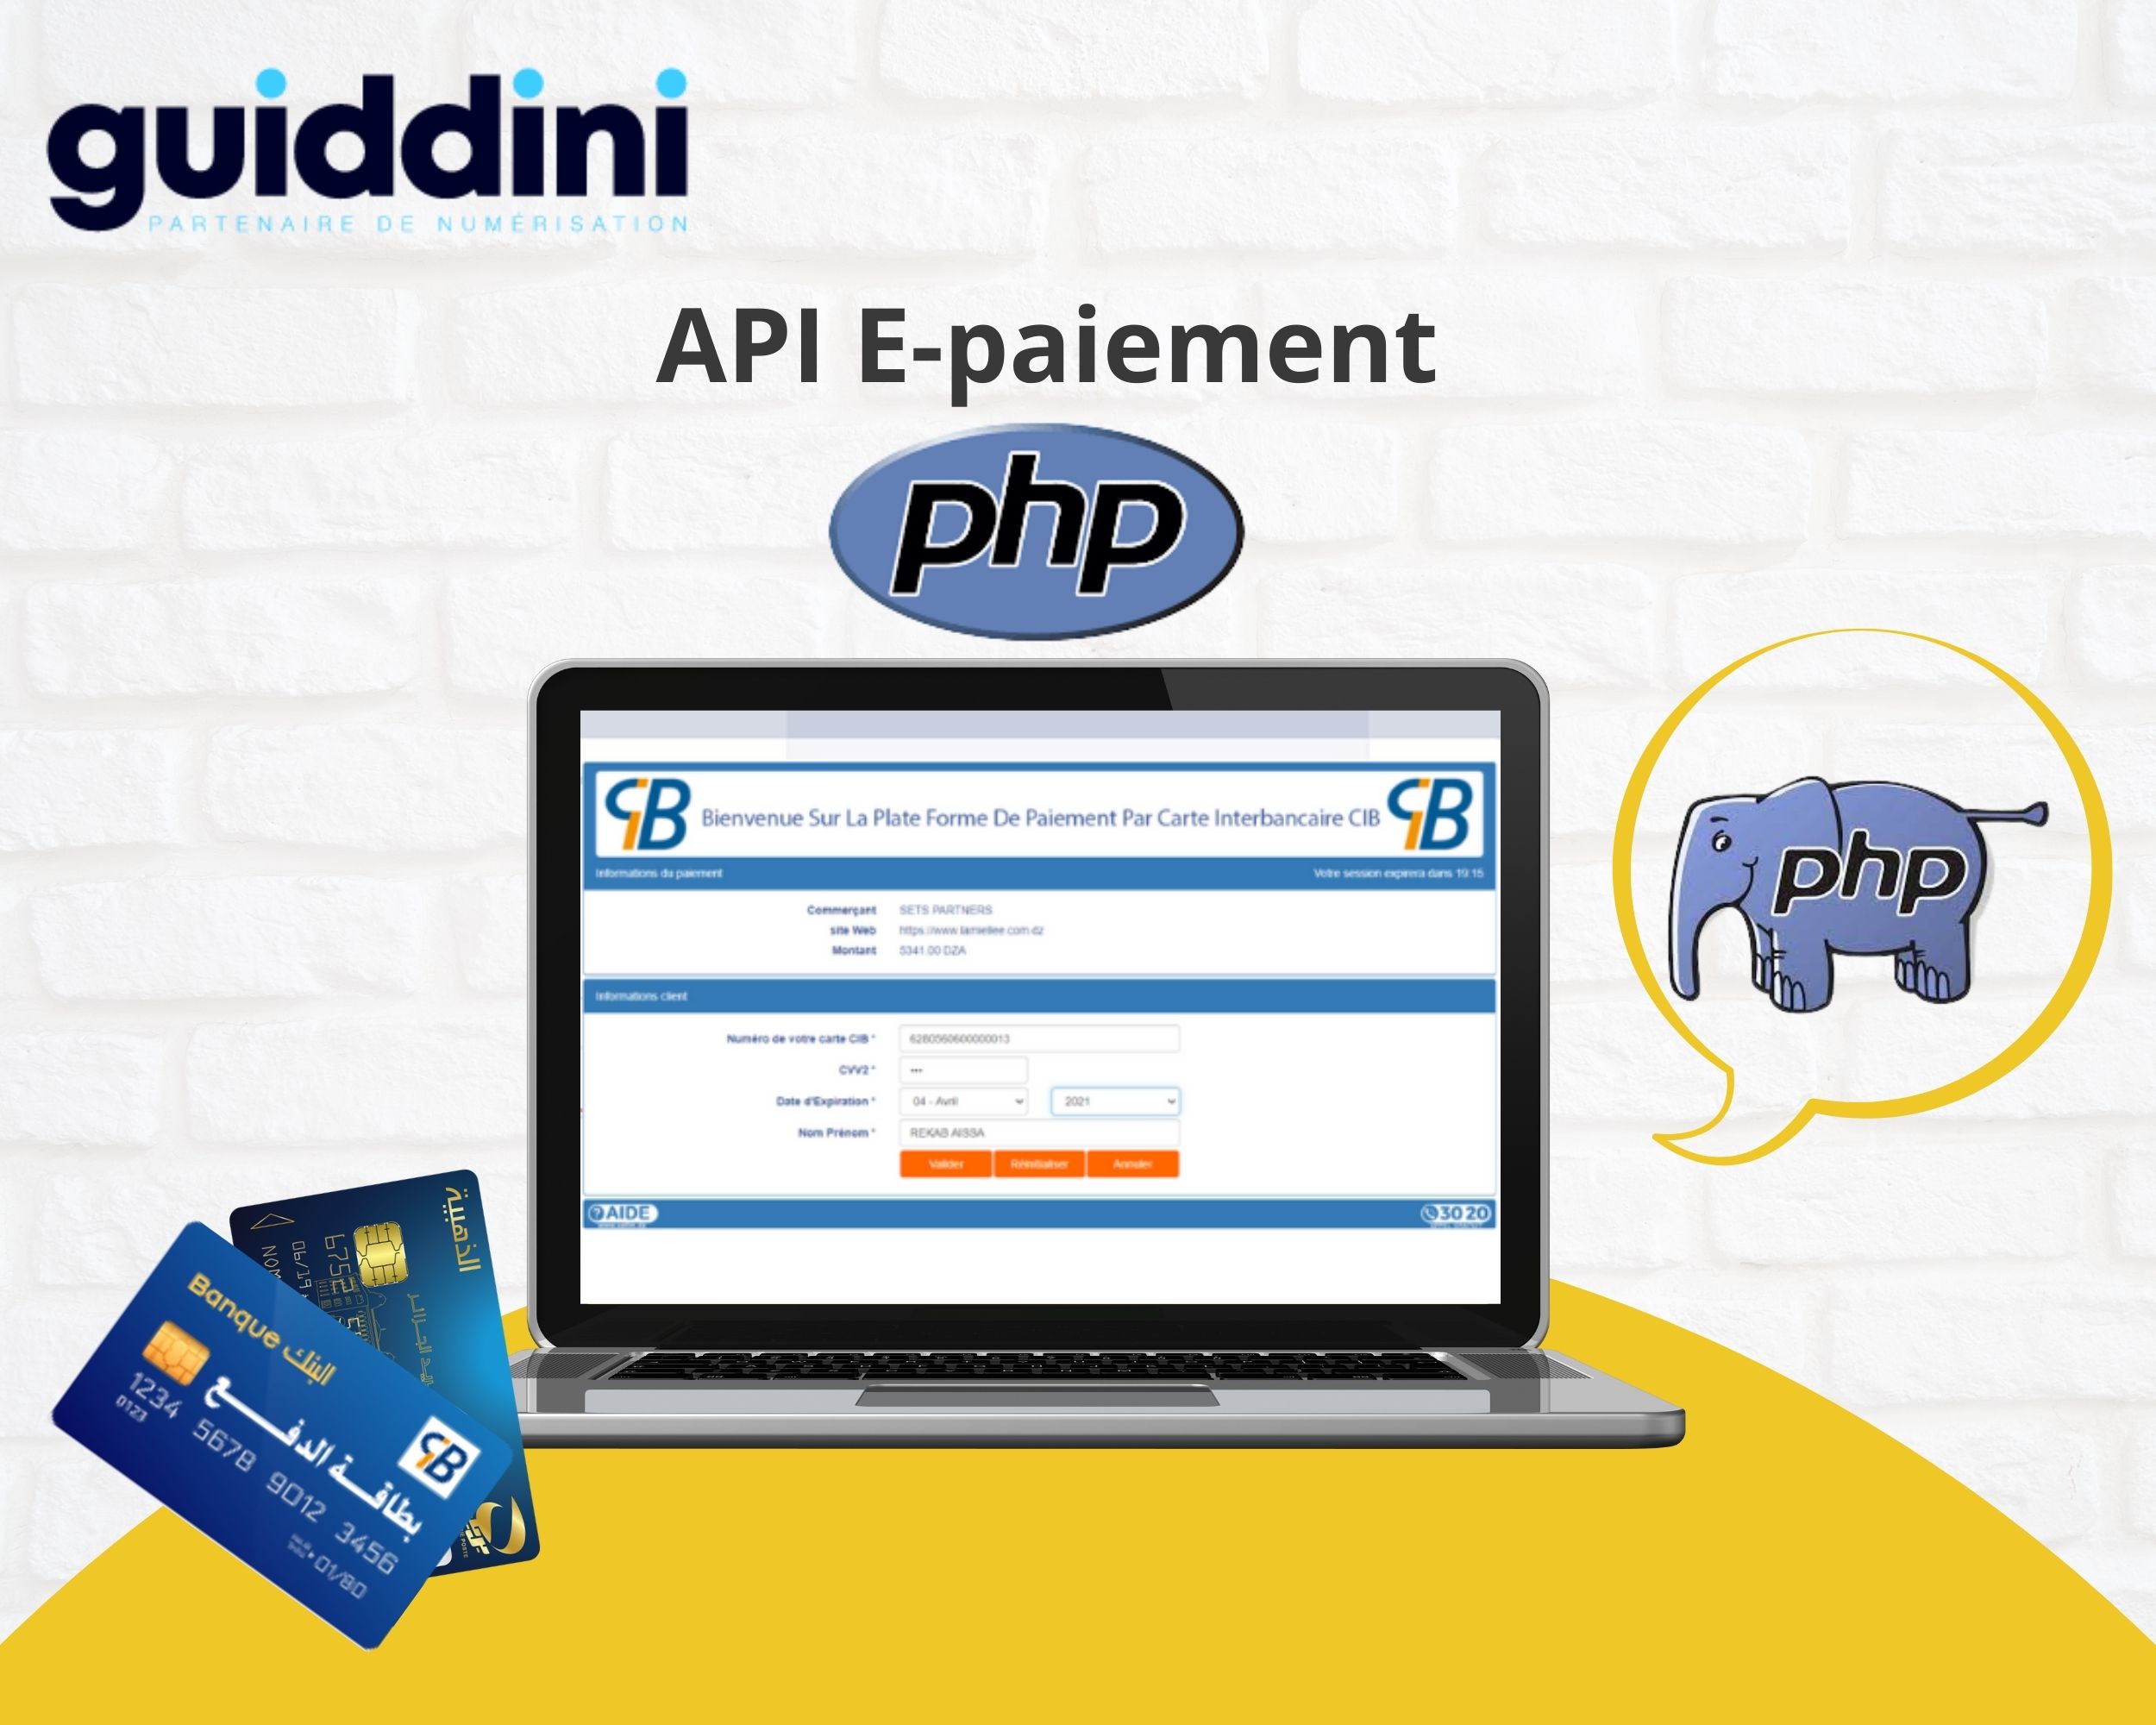 Api de paiement en ligne PHP 7.4 certifiée par Satim et Algérie poste by Guiddini